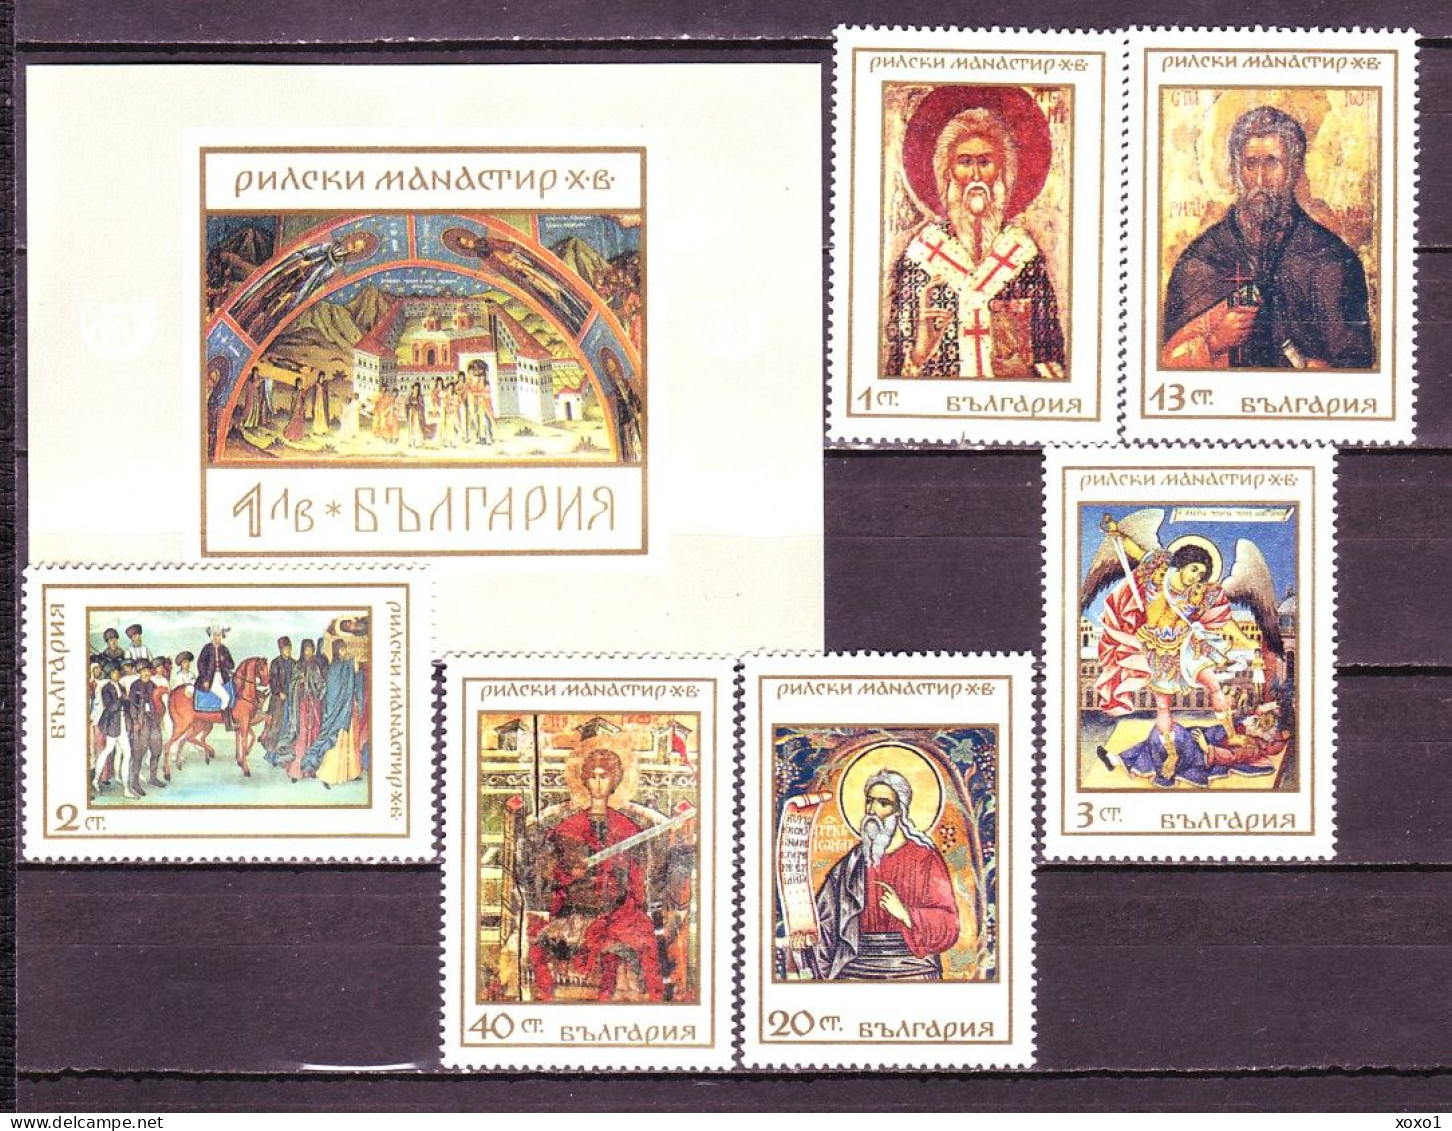 Bulgaria 1968 MiNr. 1850 - 56 (Bl 23) Bulgarien Rila Monastery, Icons, Mural, Religions Paintings 6v+s/sh MNH ** 11.50 € - Quadri